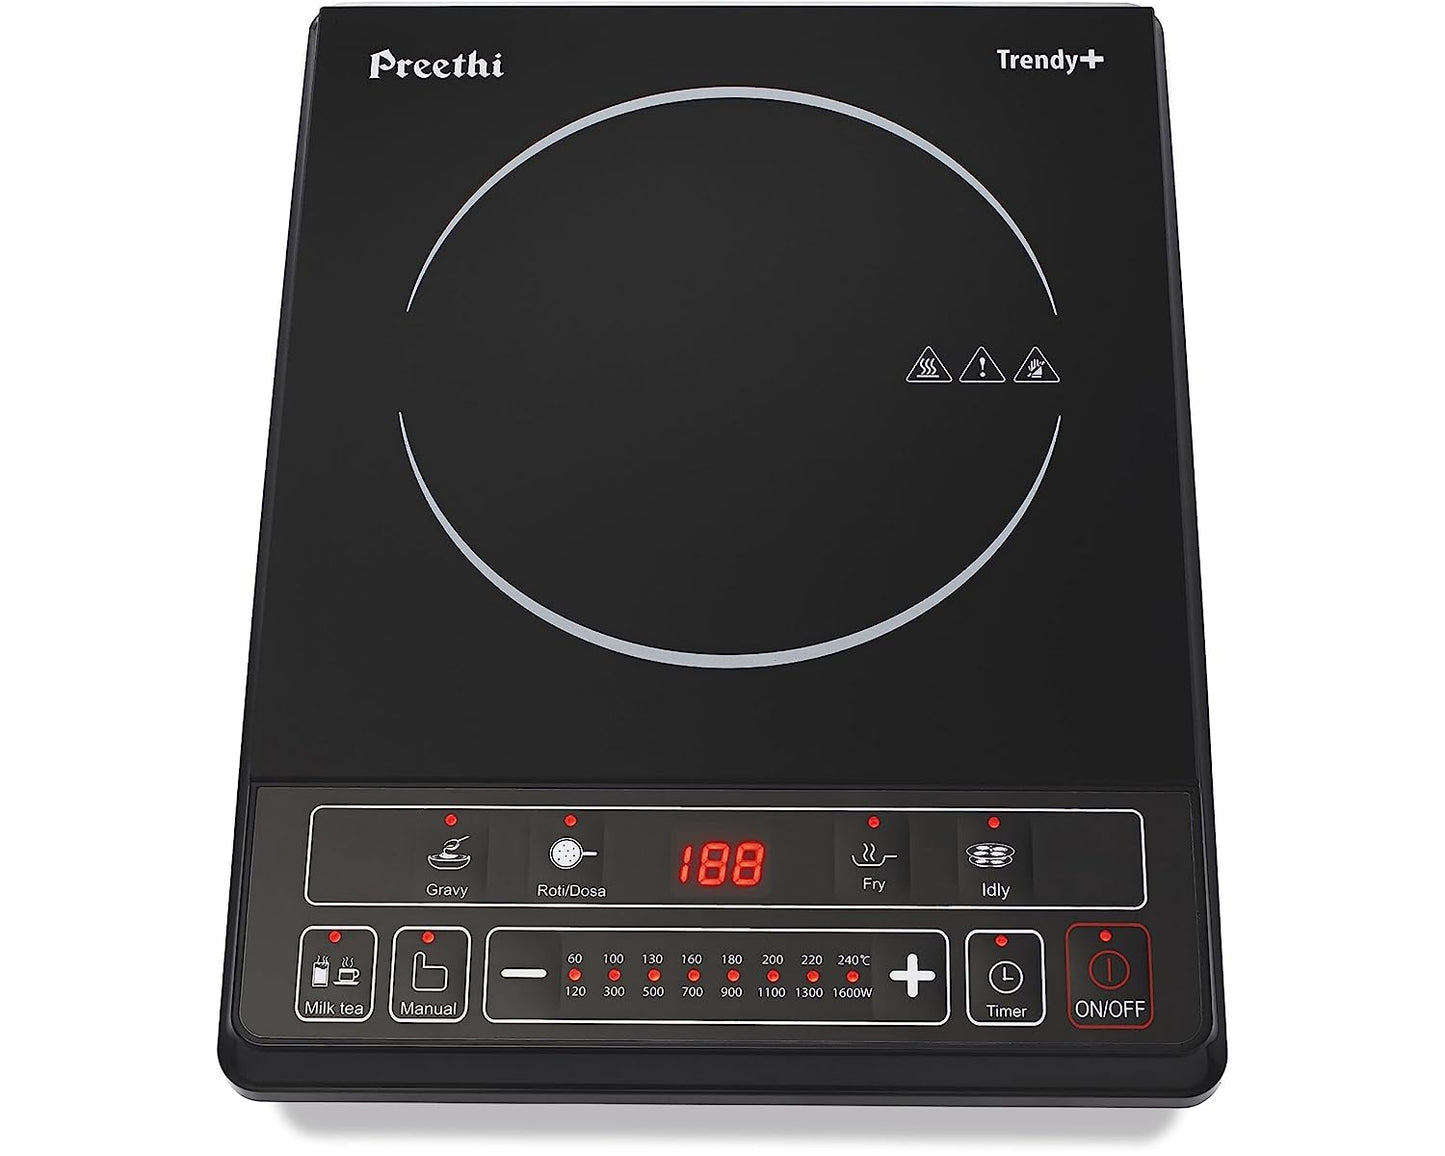 Preethi Trendy Plus IC 116 1600-Watt Induction Cooktop (Black)